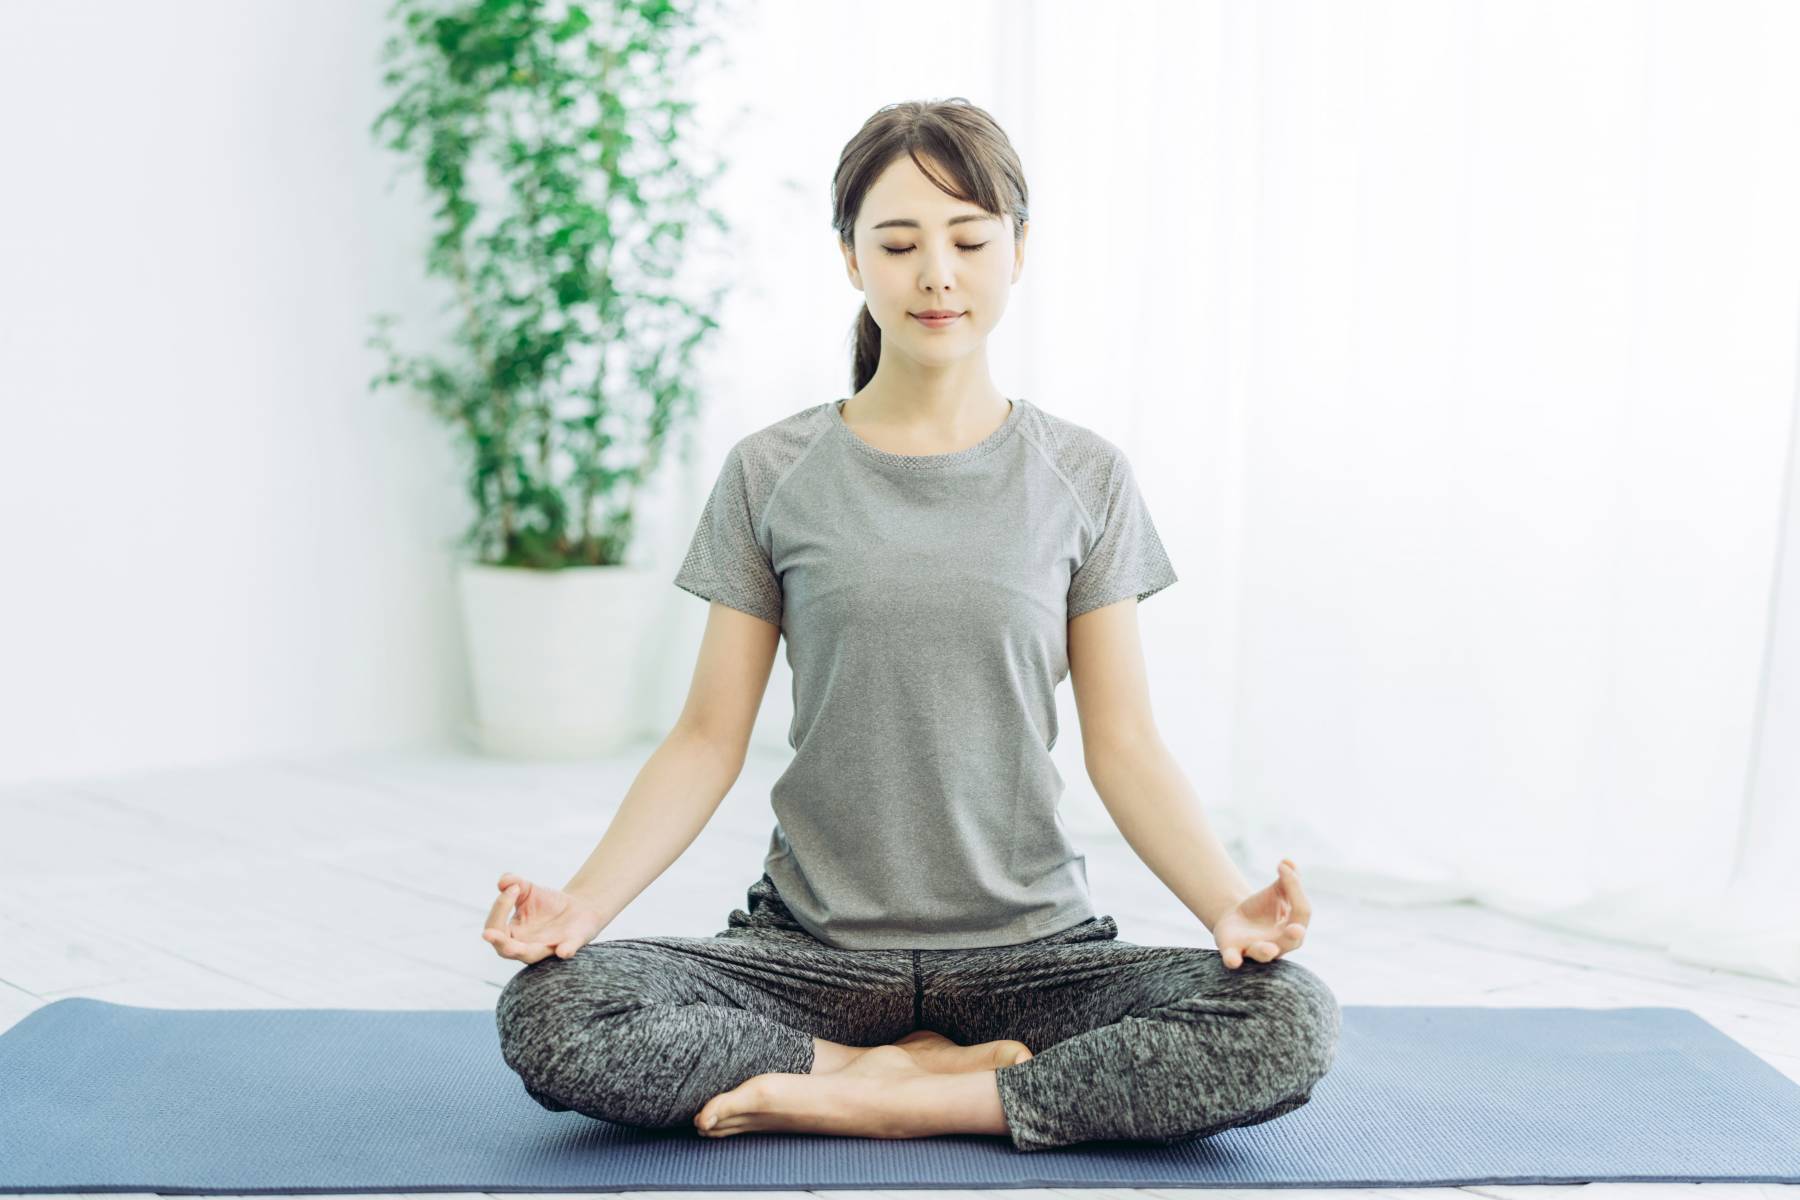 Mindful meditation for improve mental health